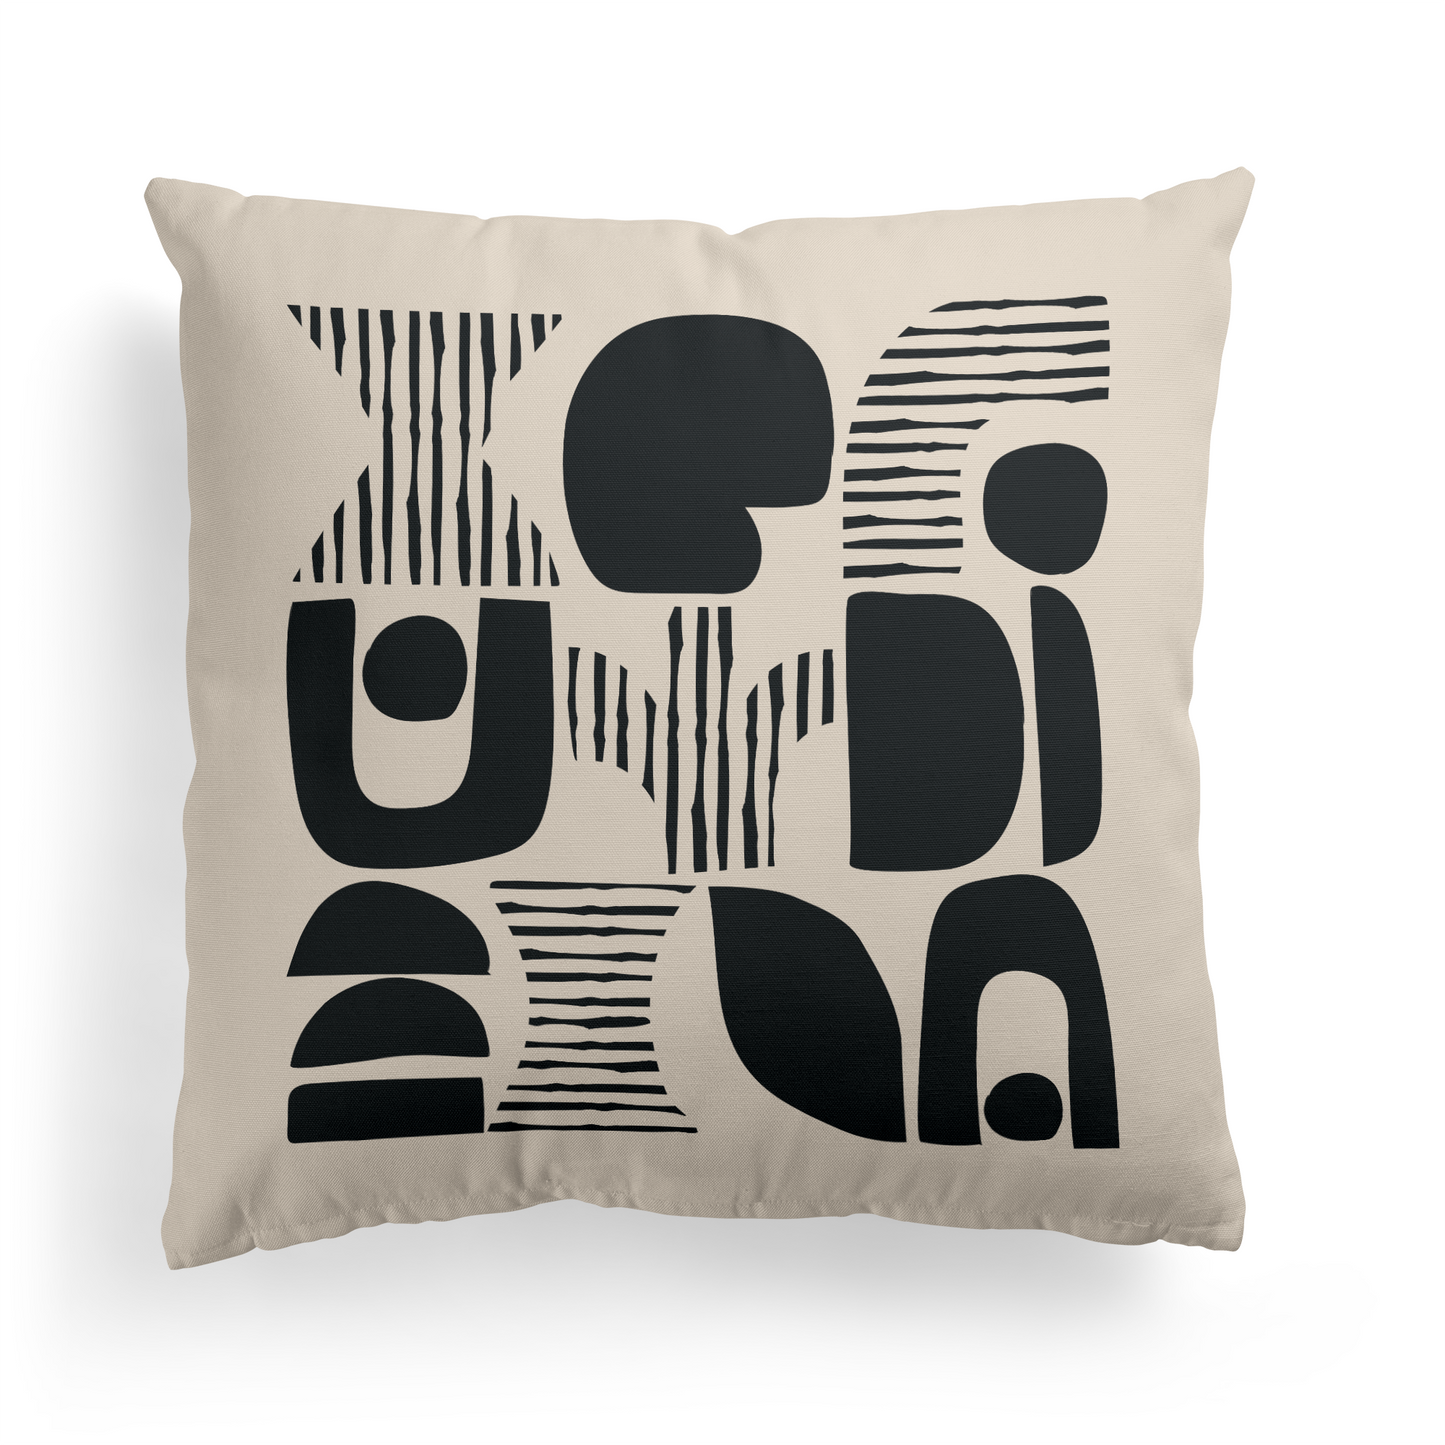 Bauhaus Modern Art Throw Pillow